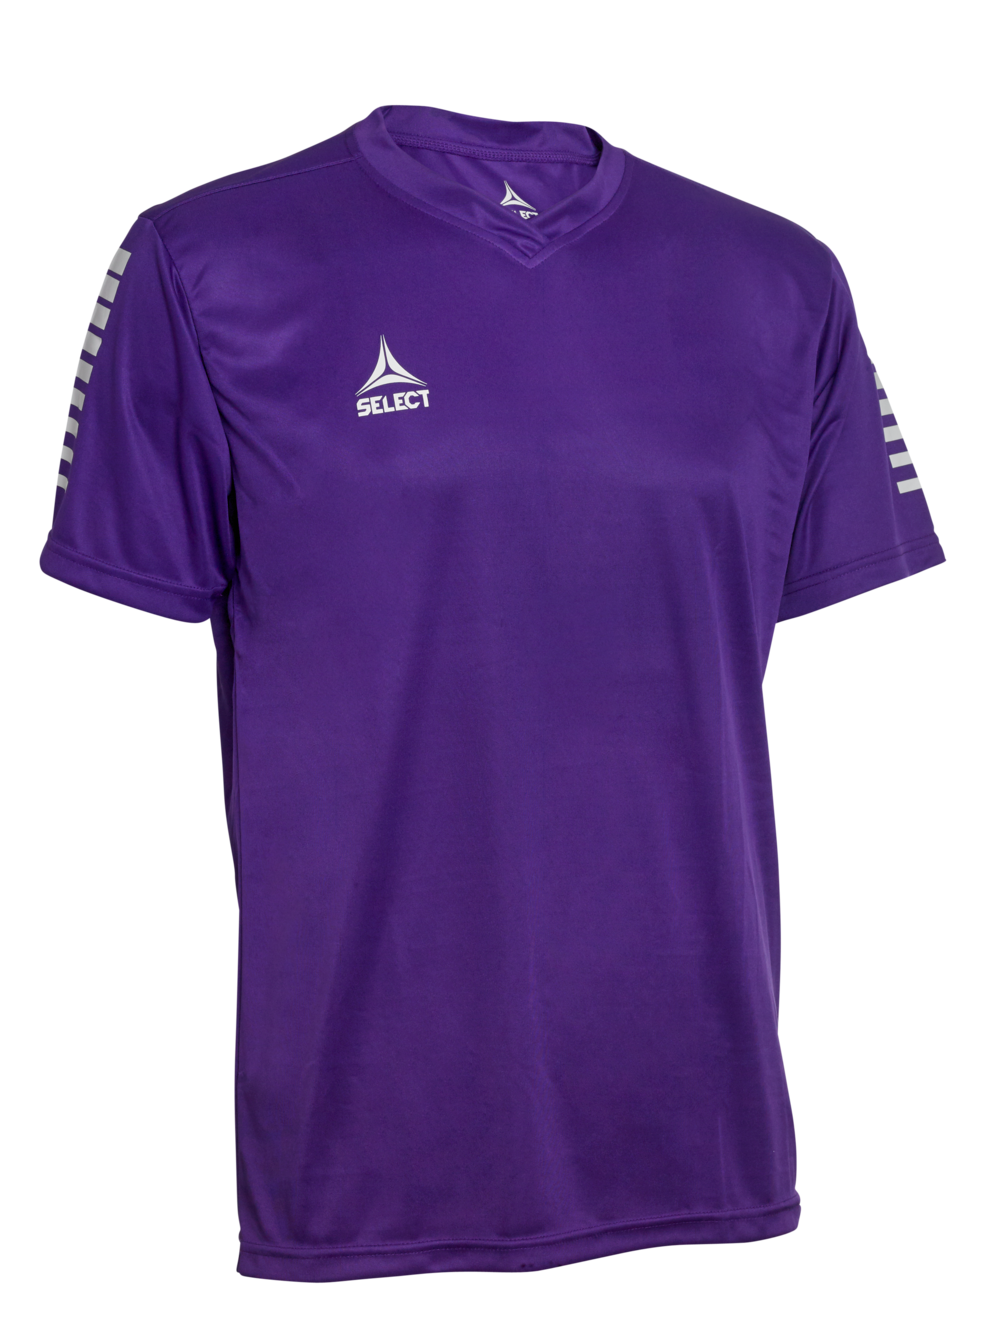 pisa_player_shirt_s-s_purple